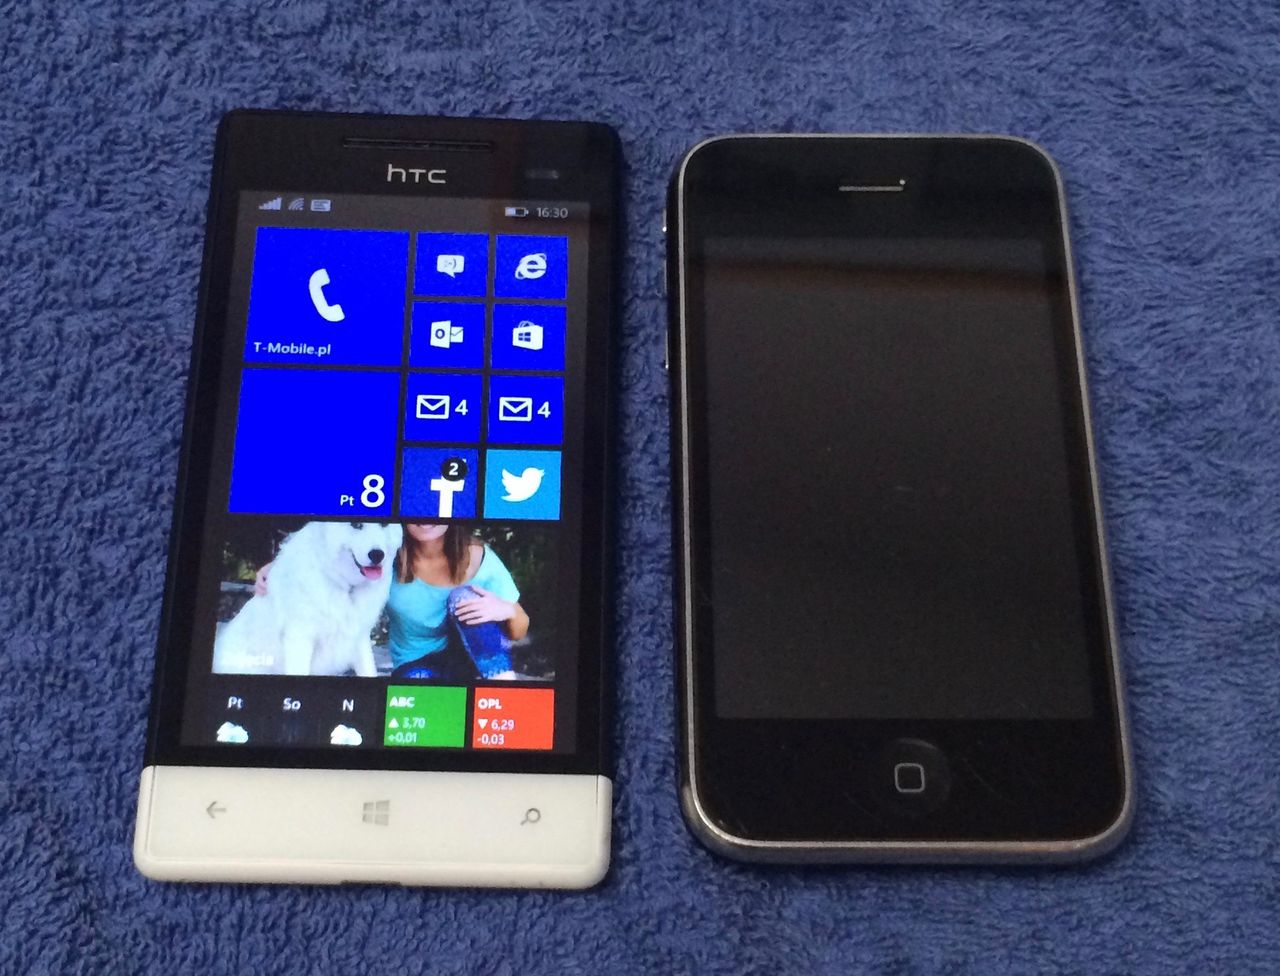 Choć w rzeczywistości HTC 8s rozmiarami nie odbiega od iPhonea 3GS, wygląda zdecydowanie smuklej. Z całą pewnością jest cieńszy i lżejszy. Więc jeśli chodzi o funkcję drugiego telefonu, jest jak najbardziej ok.